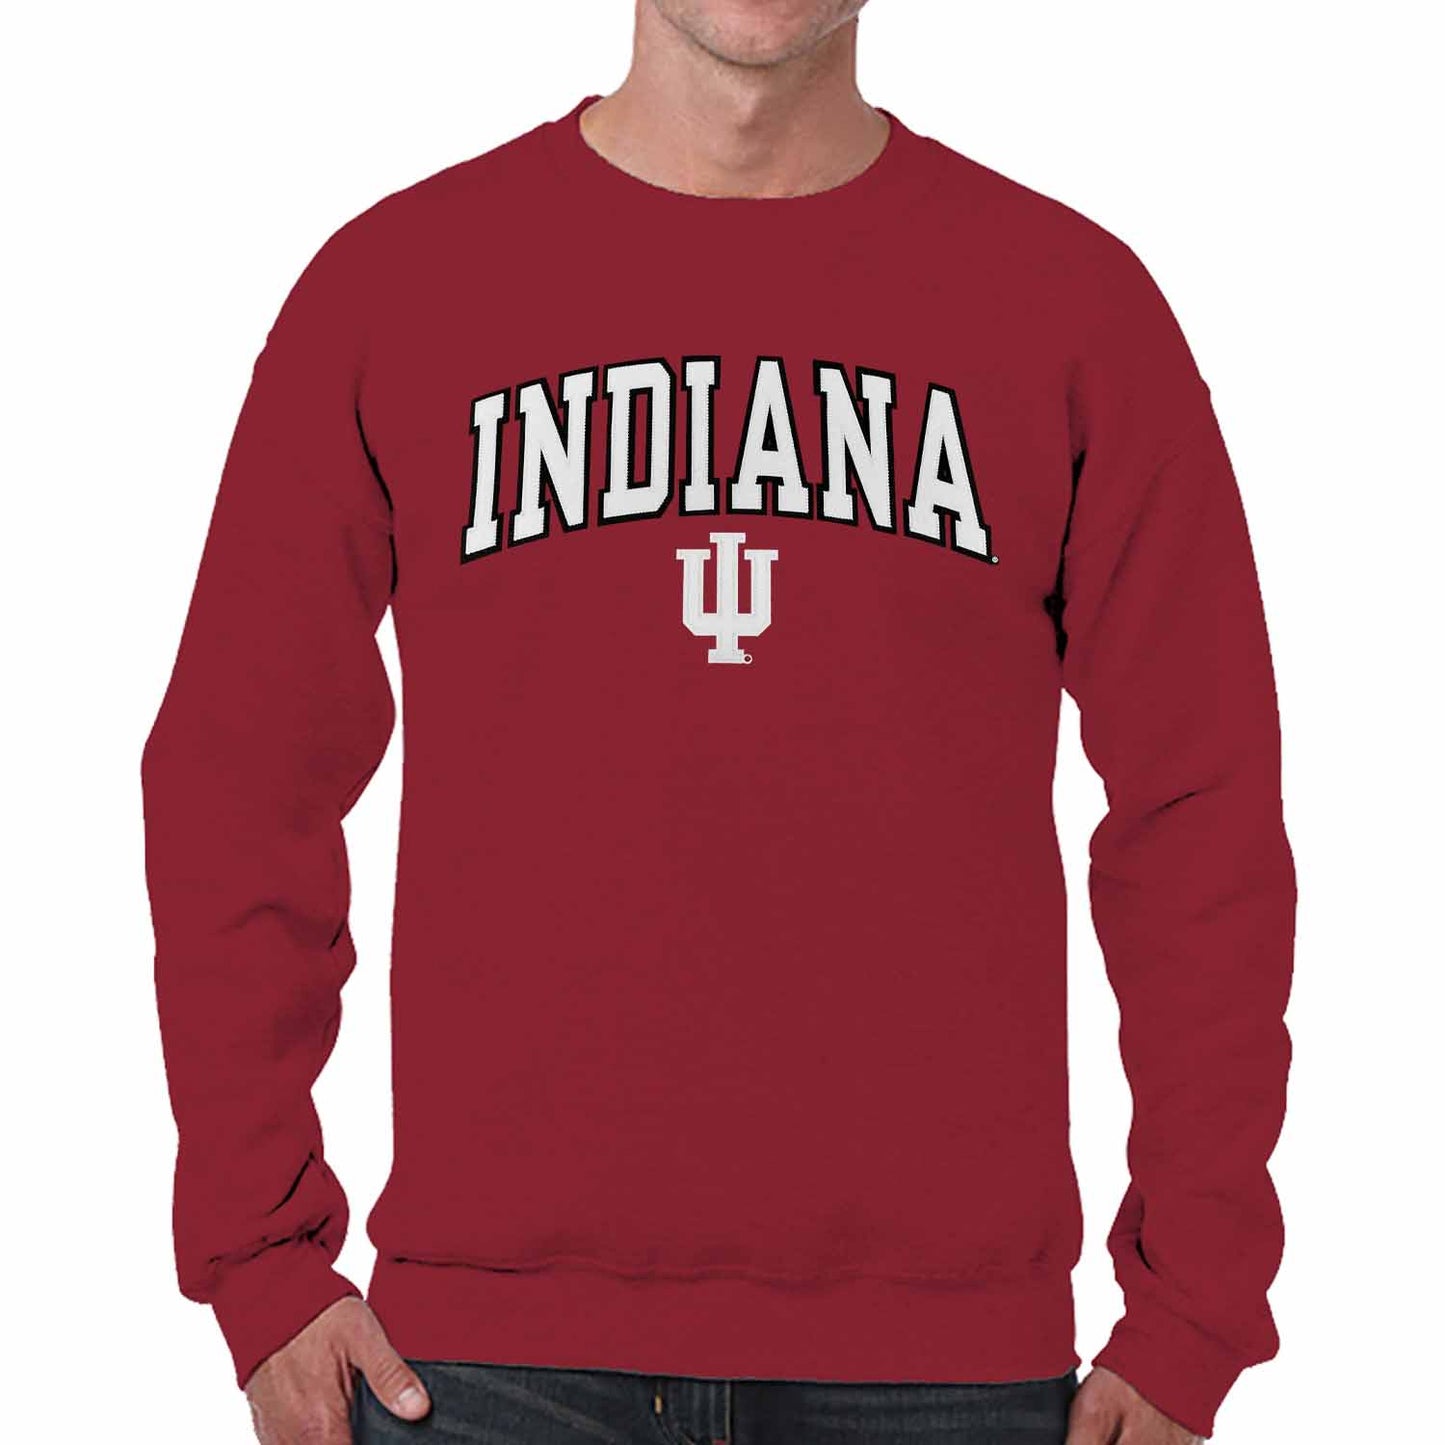 Indiana Hoosiers NCAA Adult Tackle Twill Crewneck Sweatshirt - Crimson